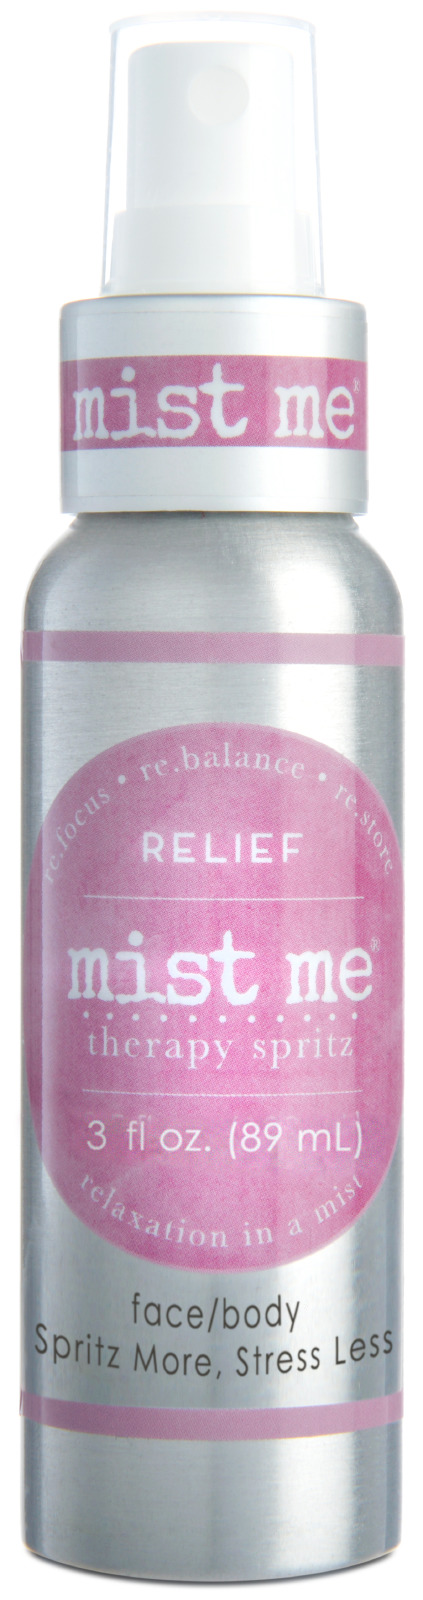 Relief Mist Me- 3.0 oz.